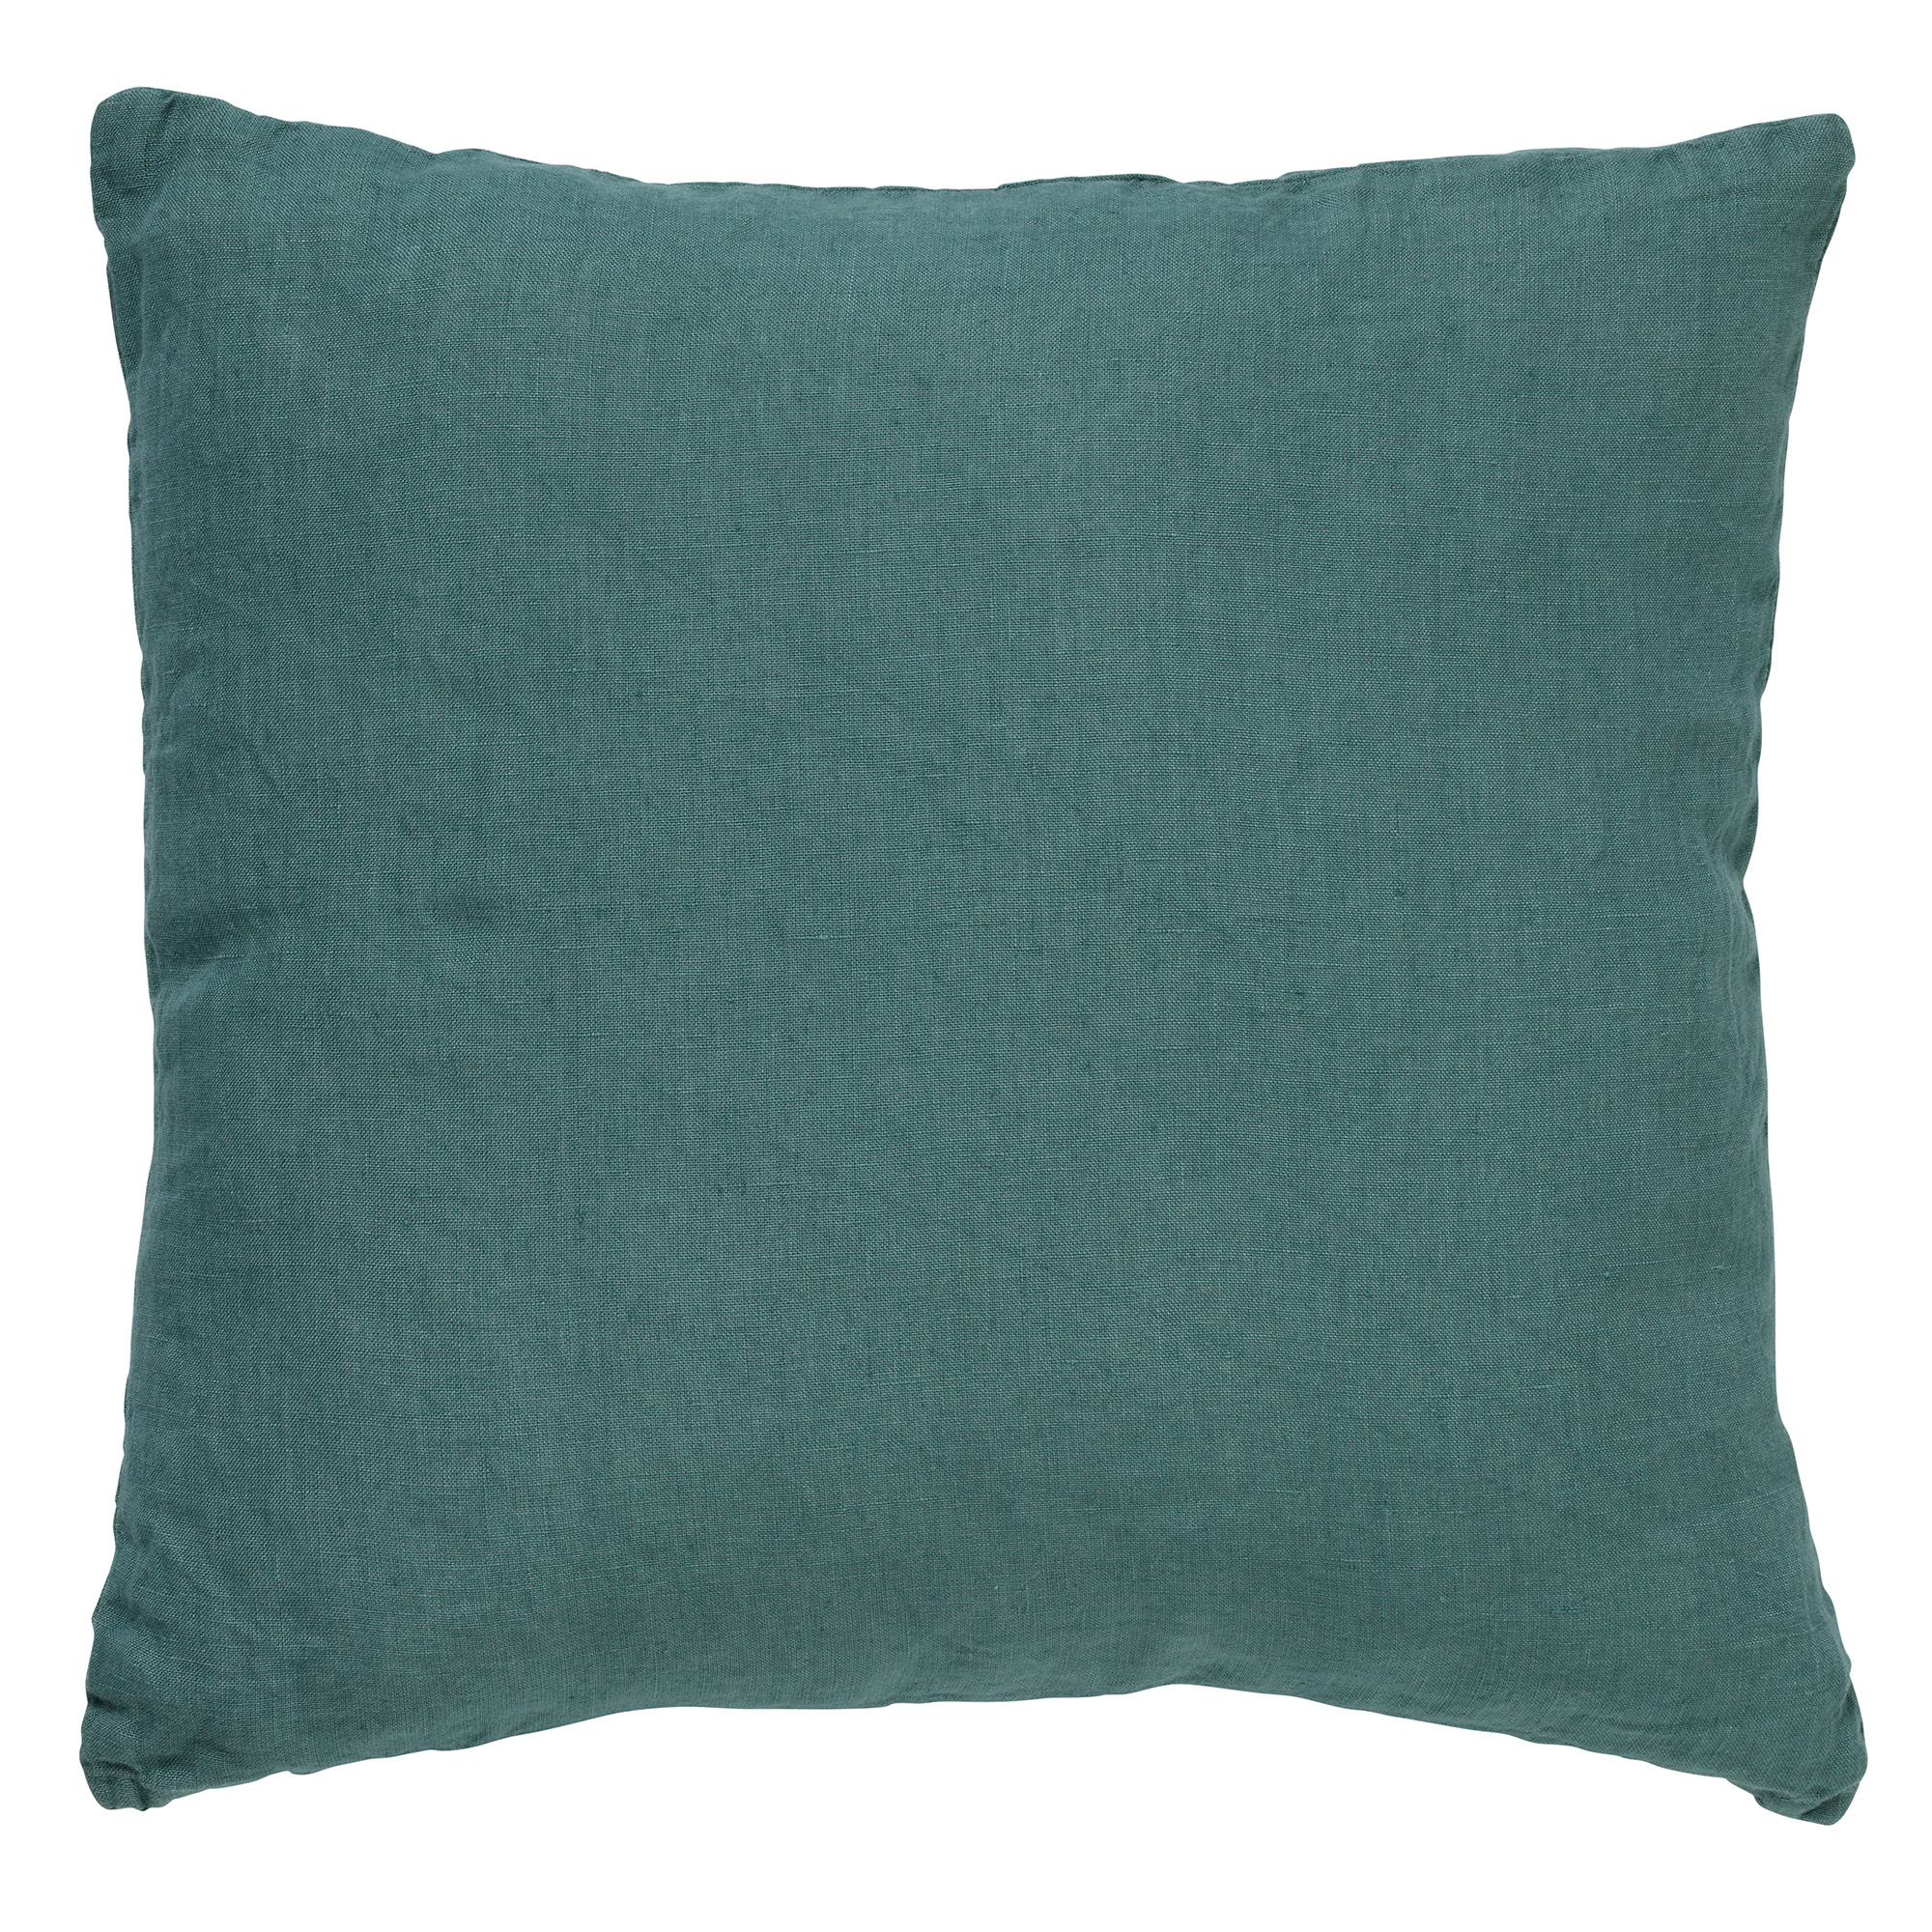 LINN - Kussenhoes 45x45 cm - 100% linnen - effen kleur - Sagebrush Green - groen